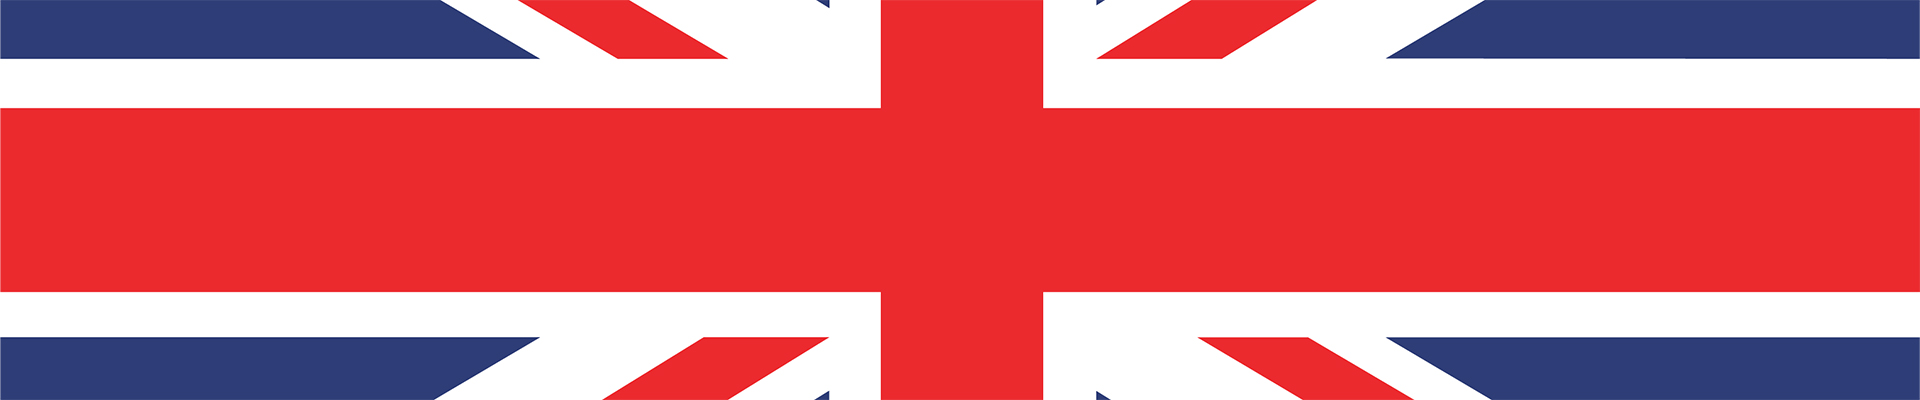 Team USA vs. ROC live stream - British flag